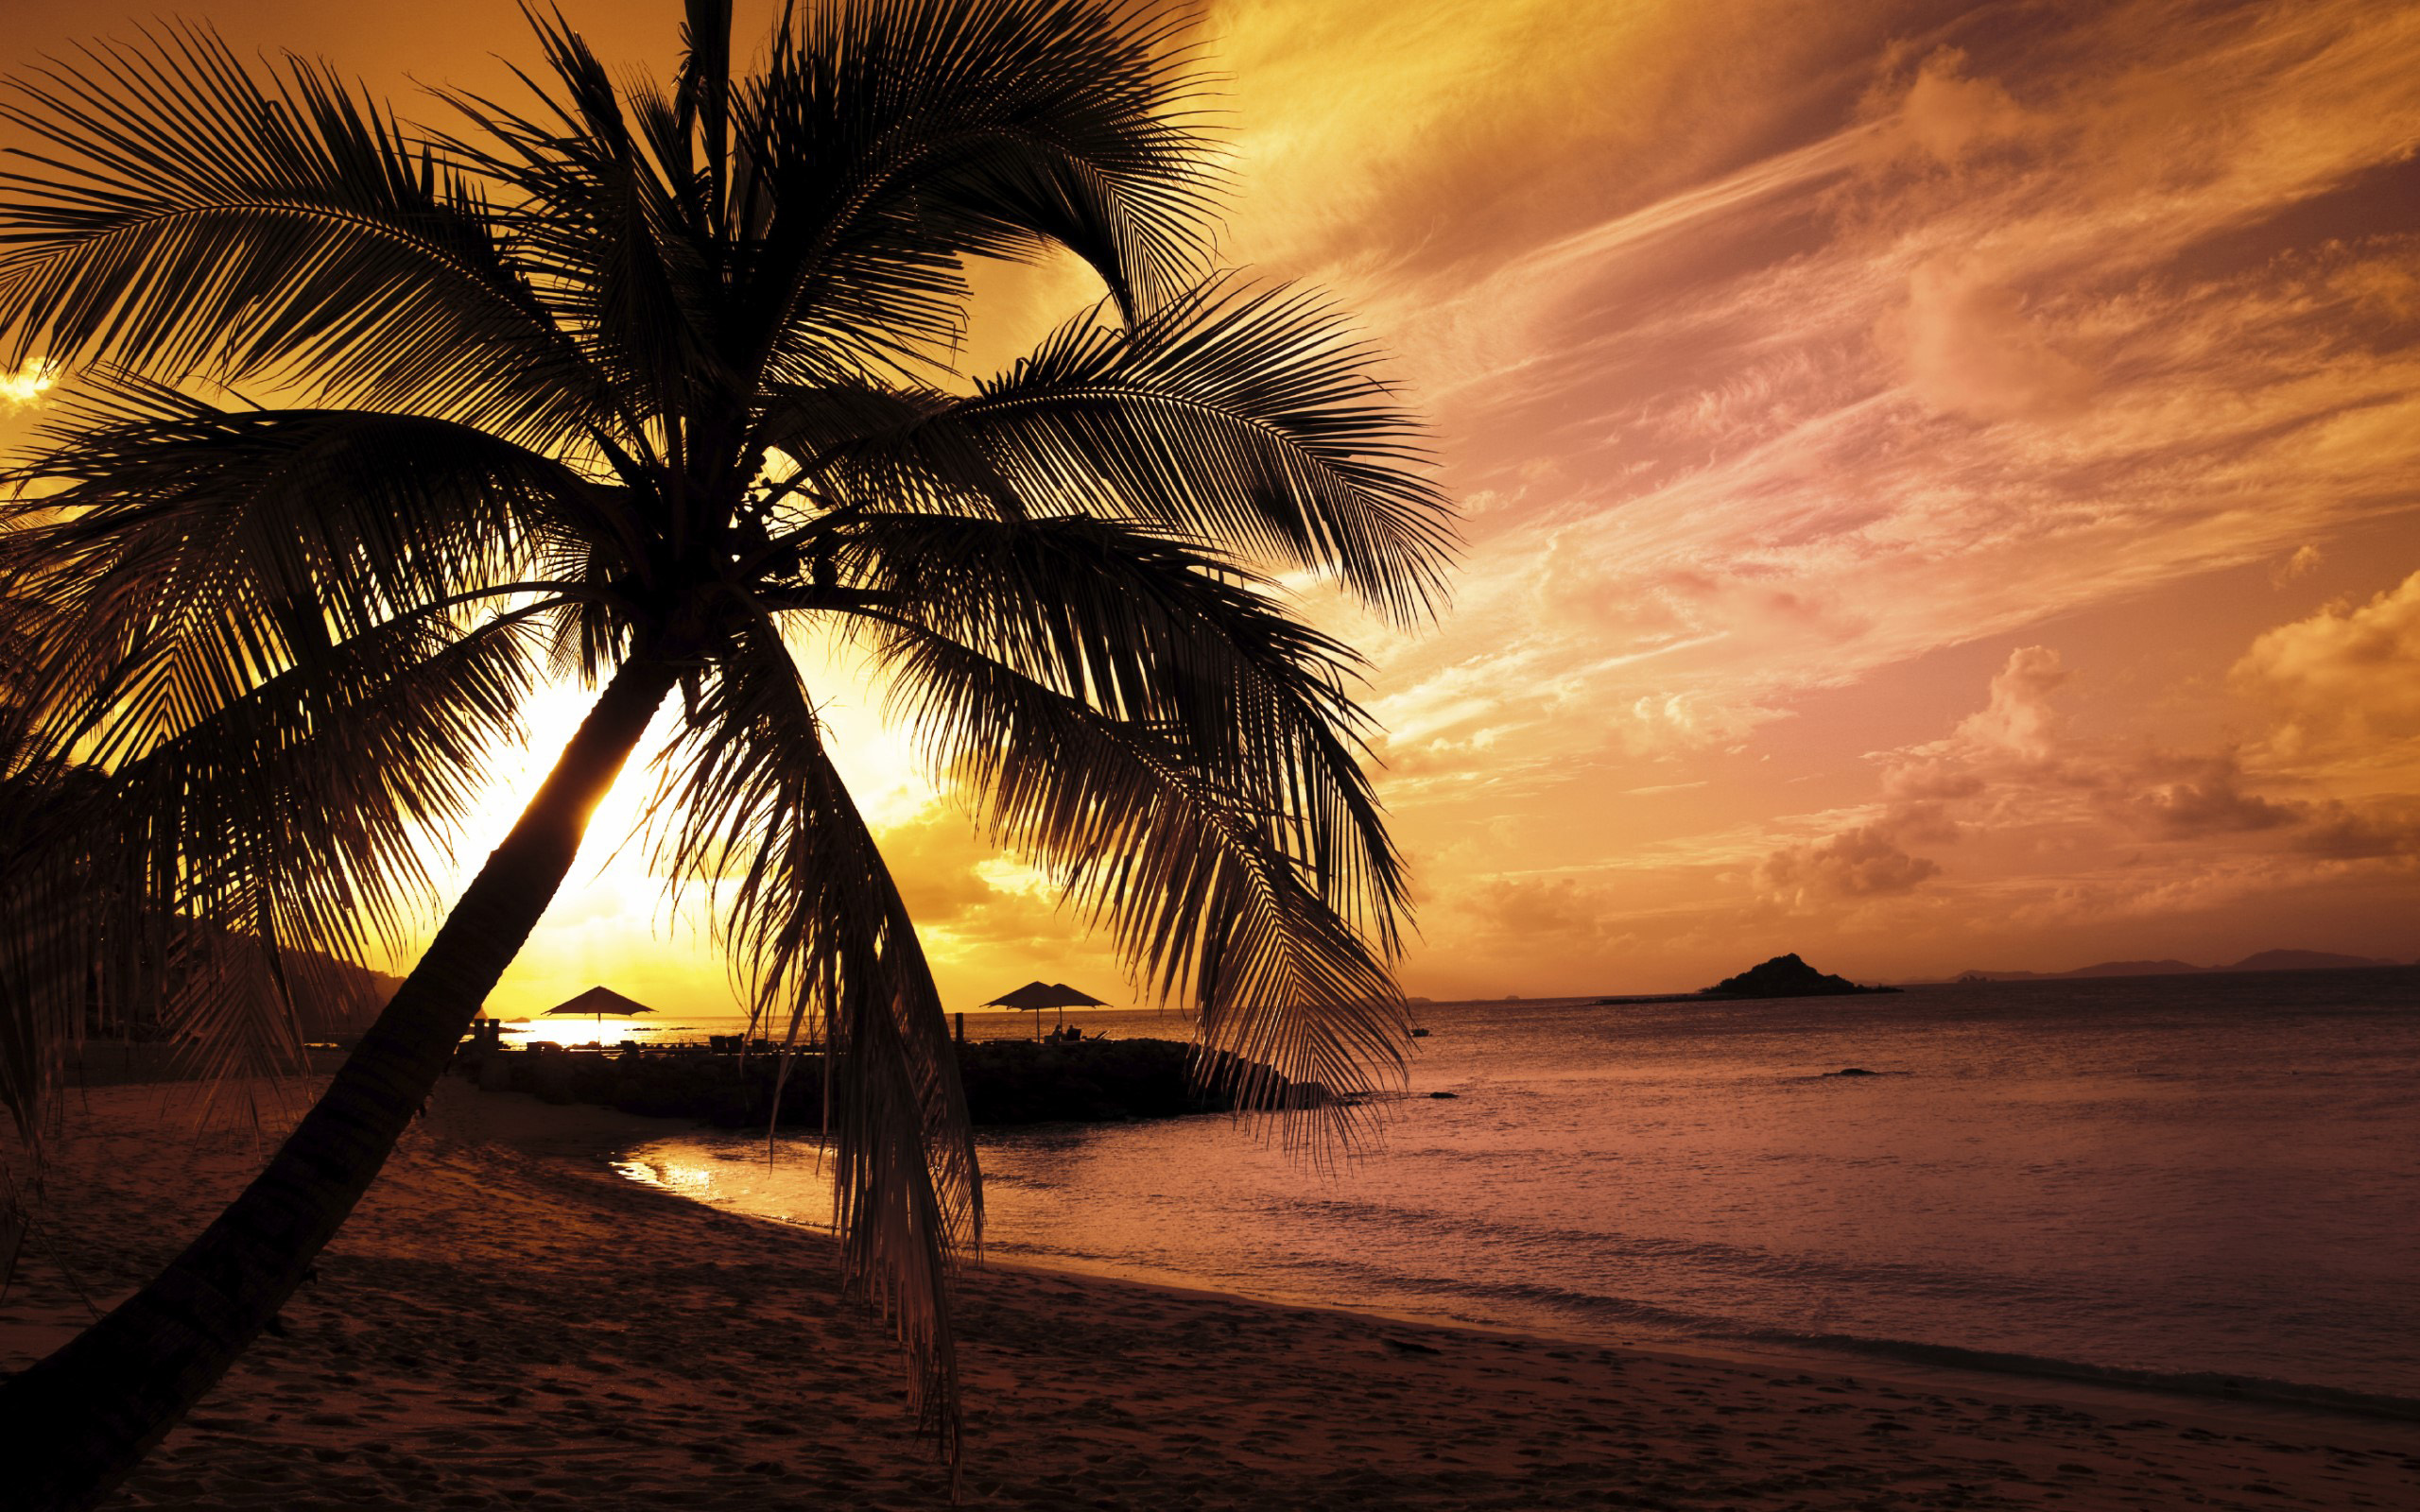 Sunset Palm Trees Hd Sunset Palm Trees HD 2560x1600 470